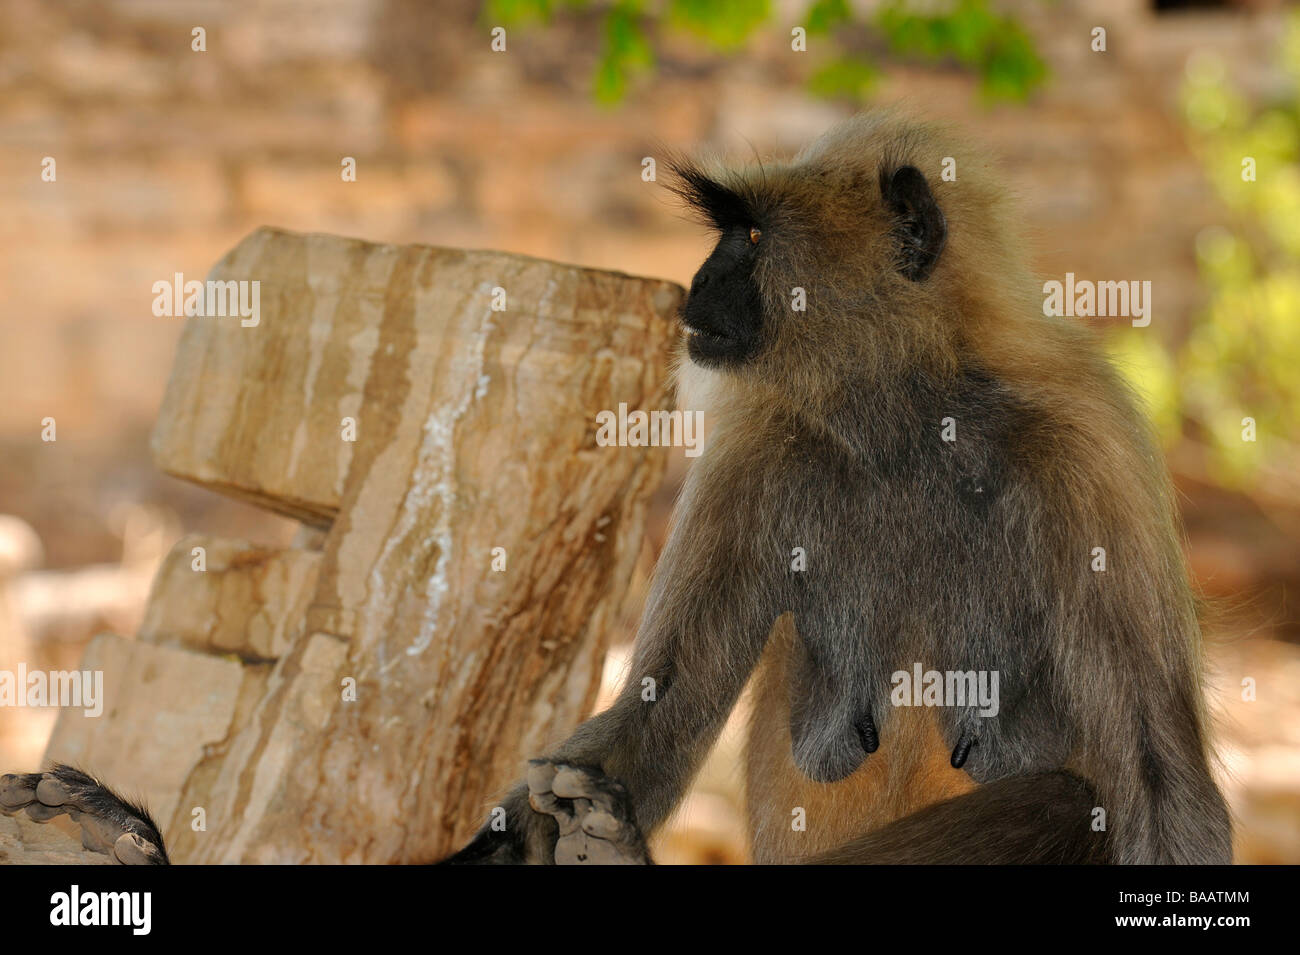 Langur monkey in Chittaurgarh Fort Foto Stock